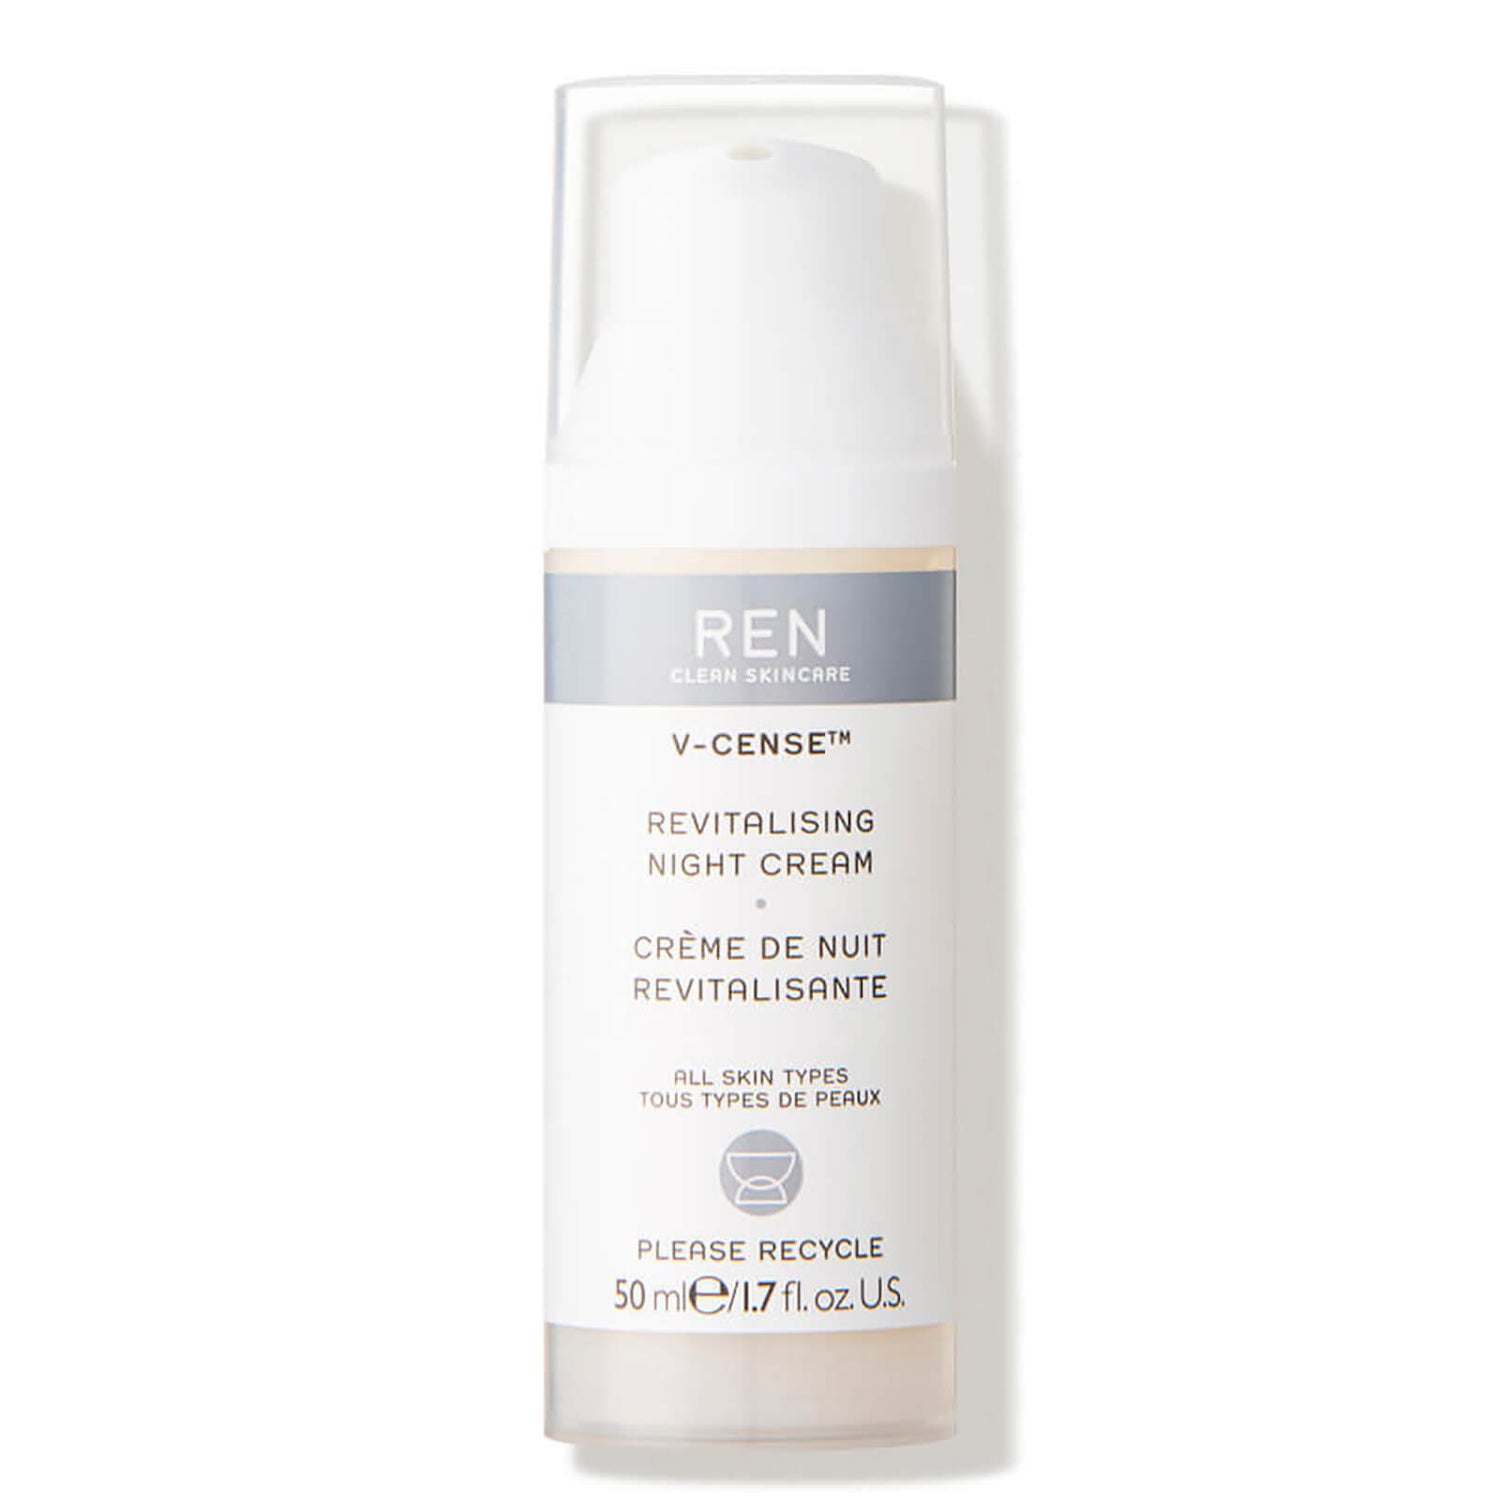 REN V-Cense Revitalising Night Cream 50 ml